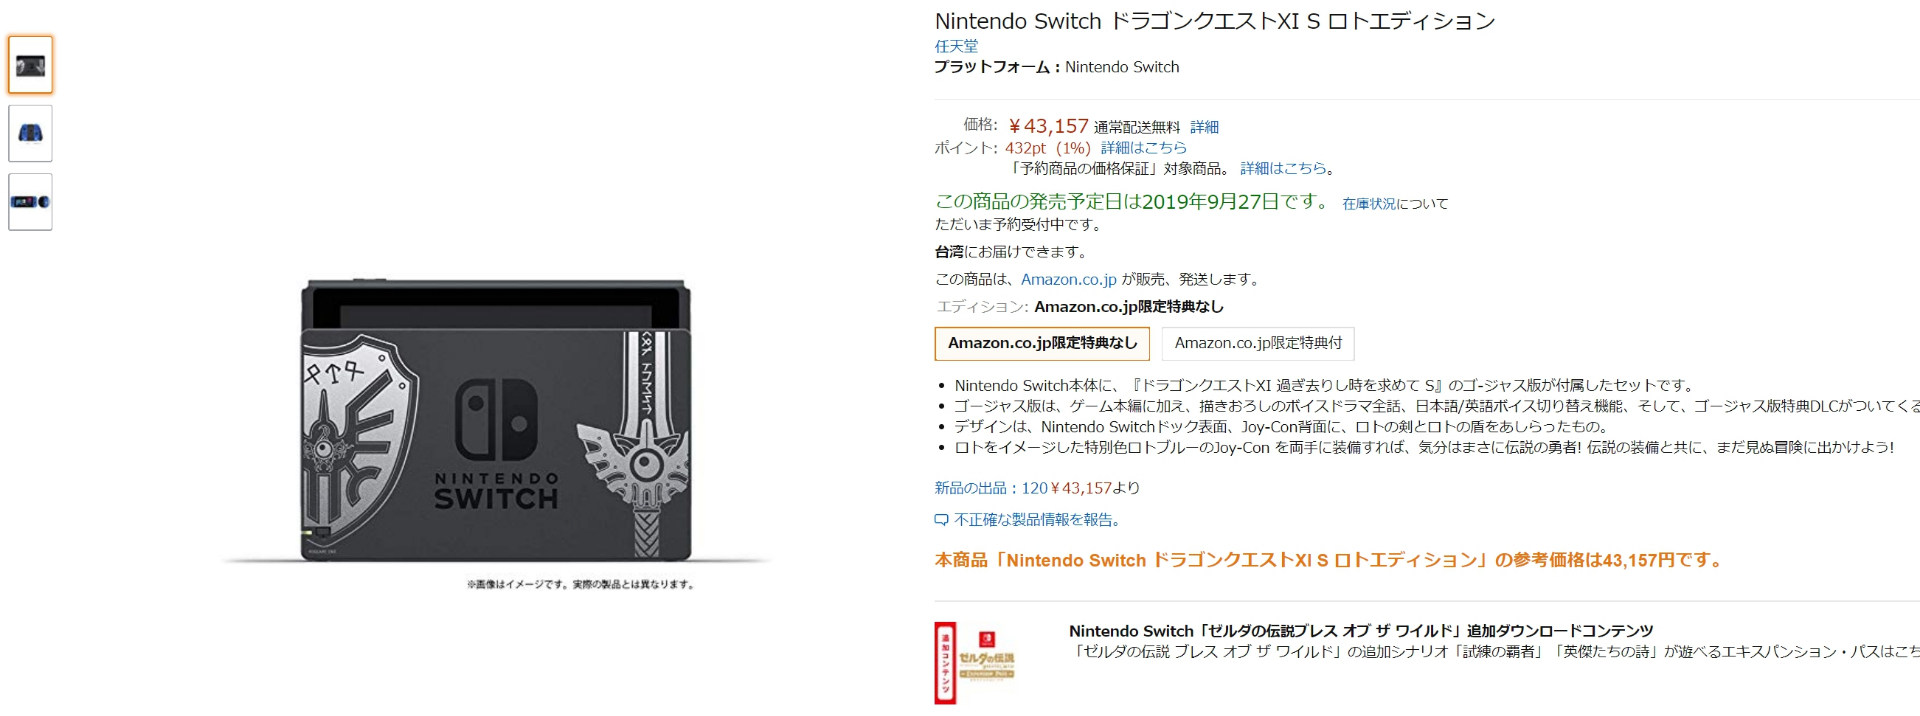 情報 勇者鬥惡龍xis 羅德同捆機現在日本亞馬遜可以直送台灣了 Ns Nintendo Switch 哈啦板 巴哈姆特